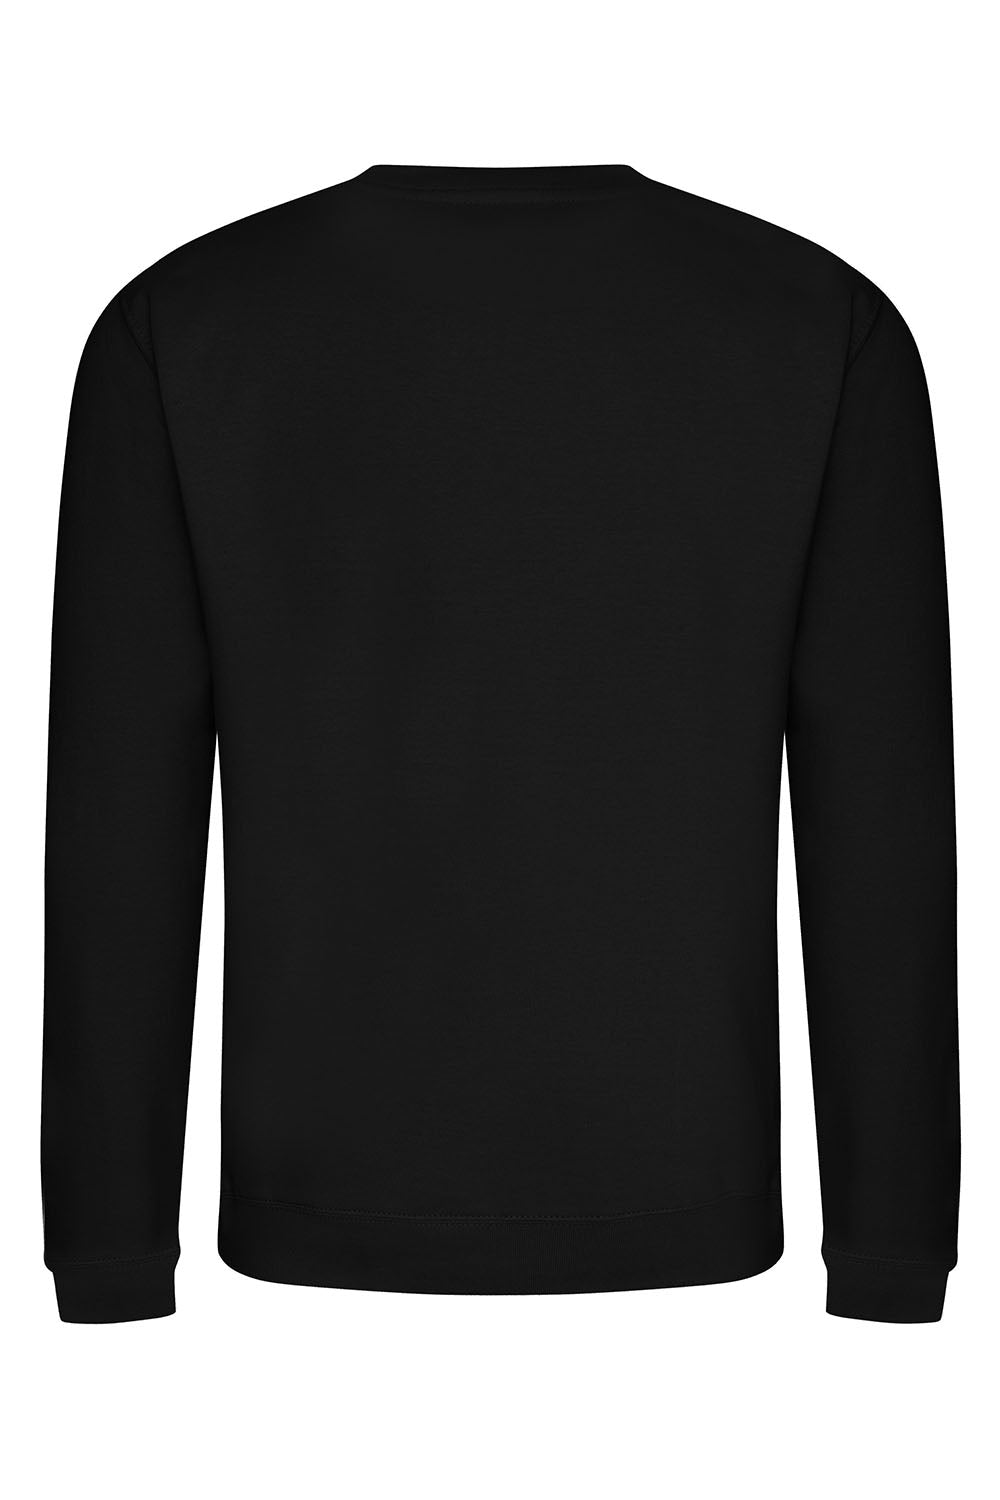 Let's Go Girls Sweatshirt In Black (Custom Pack)